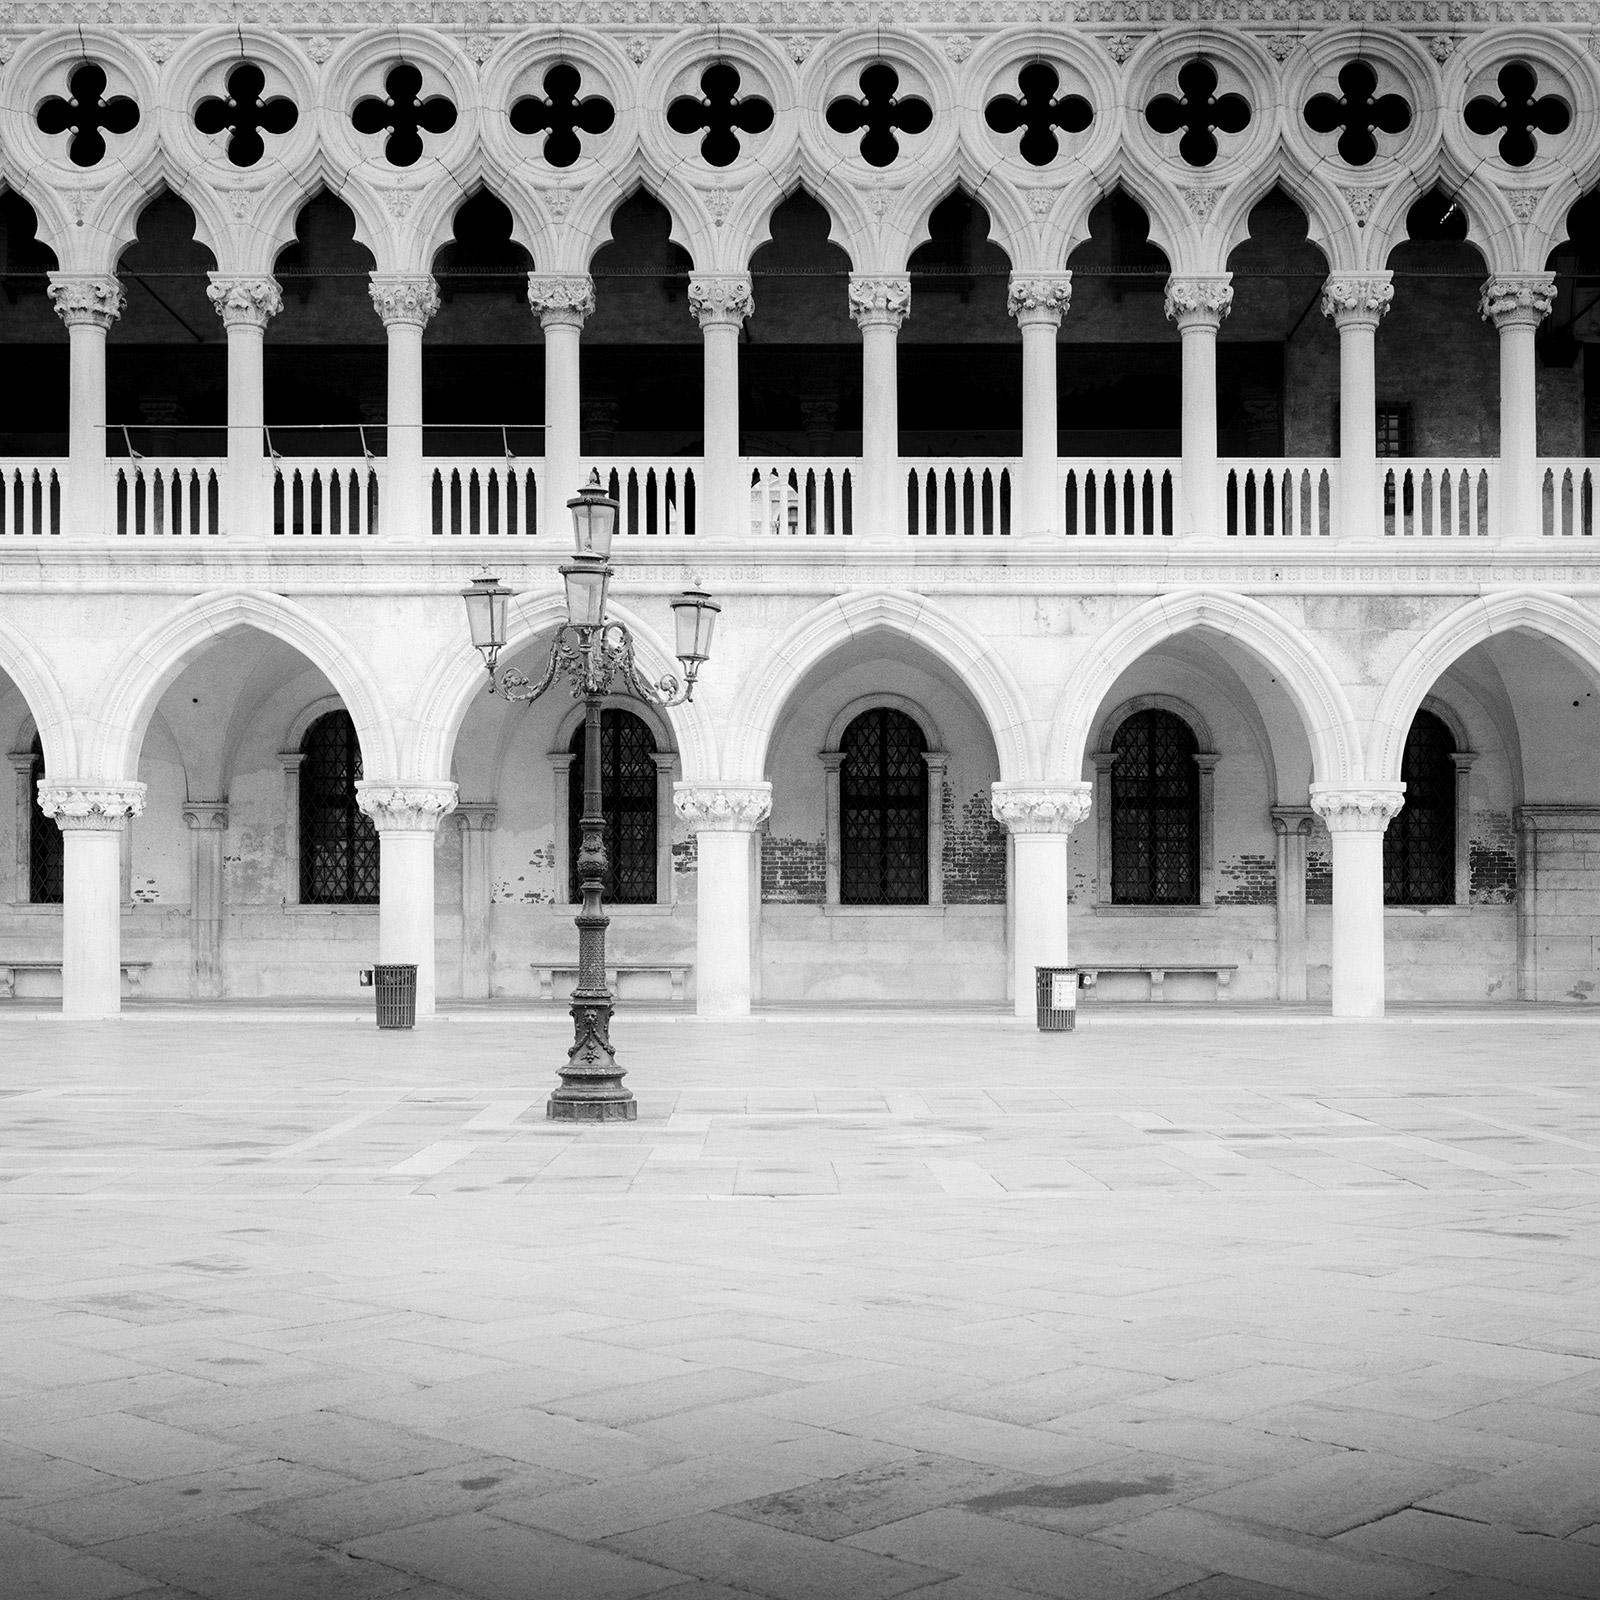 Landscape Photograph Gerald Berghammer - Façade gothique du Palais des Doges, Venise, photographie noir et blanc, paysage urbain